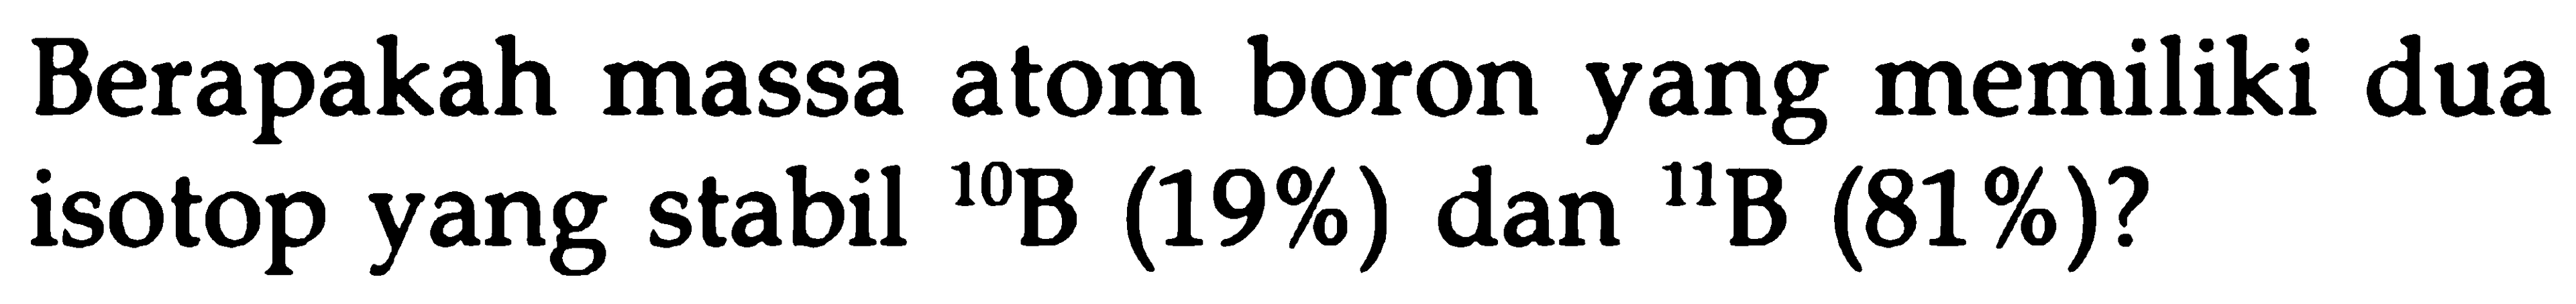 Berapakah massa atom boron yang memiliki dua isotop yang stabil 10B (19%) dan 11B (81%)?